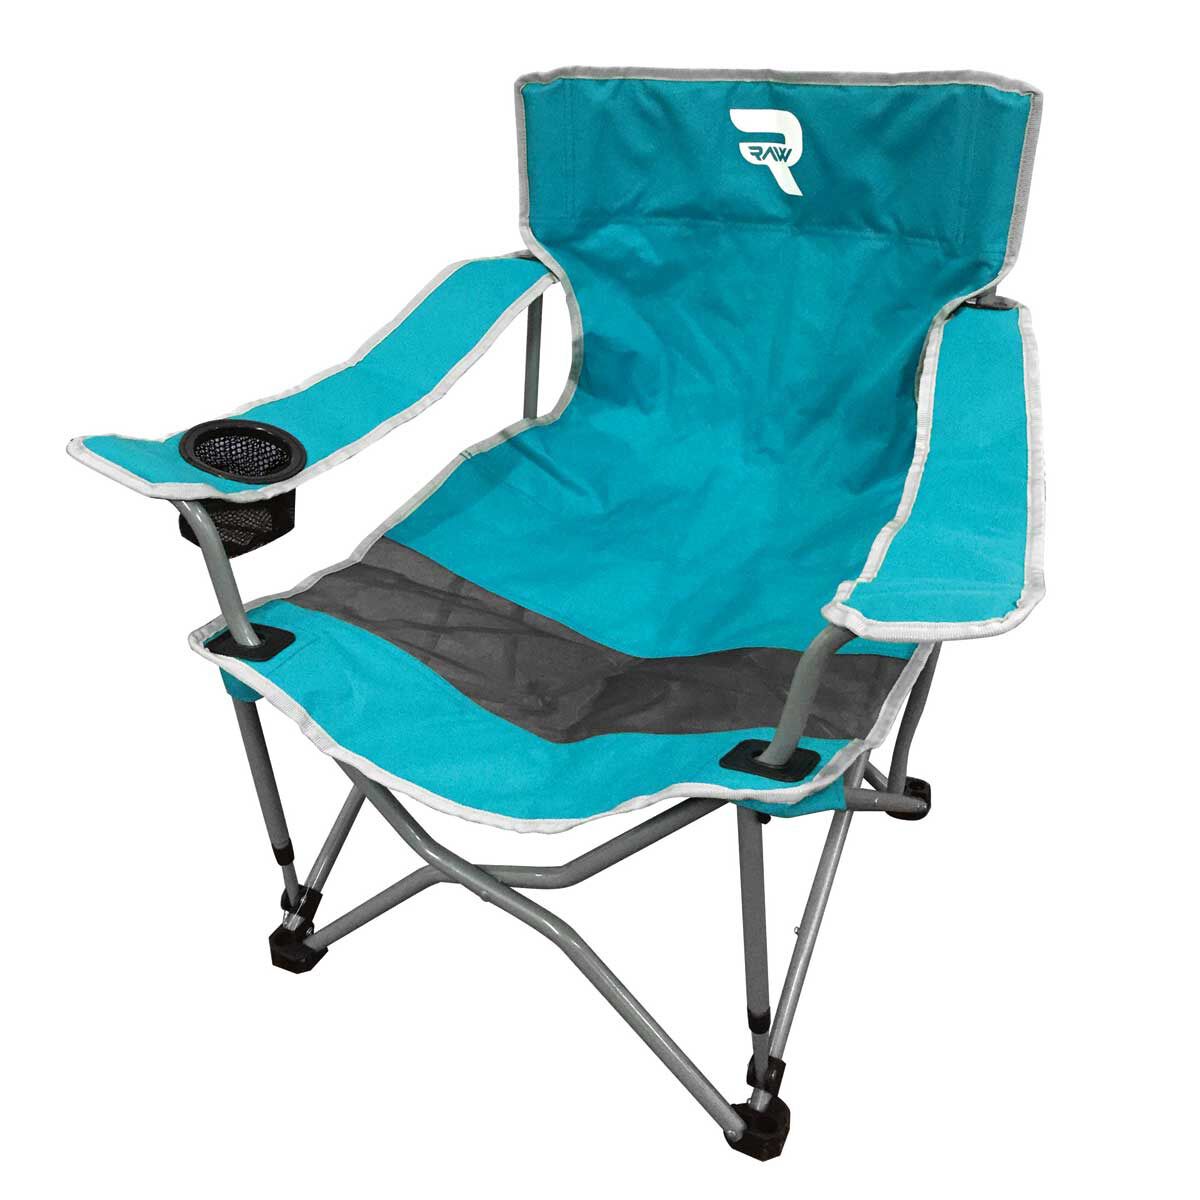 Raw Beach Chair Blue | Rebel Sport